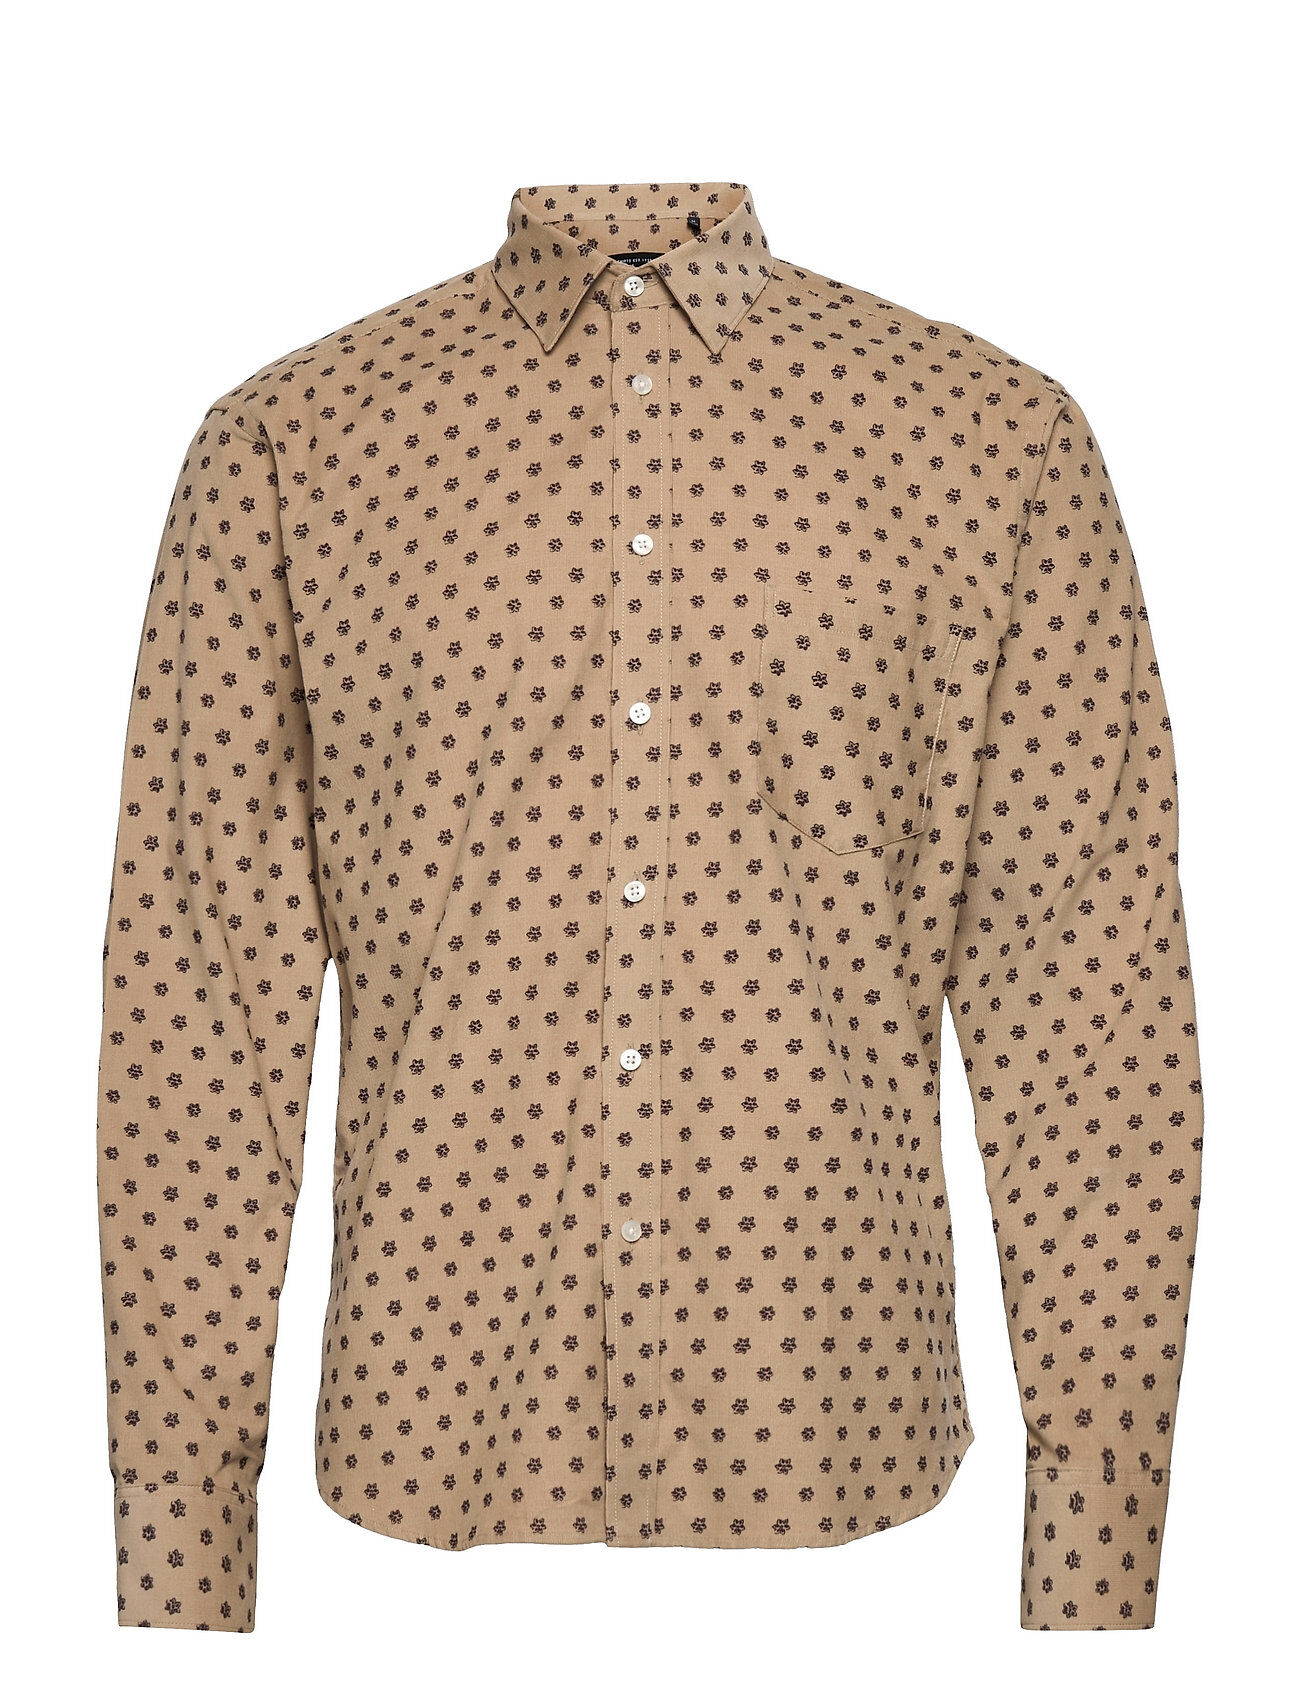 Bosweel Shirts Est. 1937 Short Cut Skjorte Uformell Multi/mønstret Bosweel Shirts Est. 1937